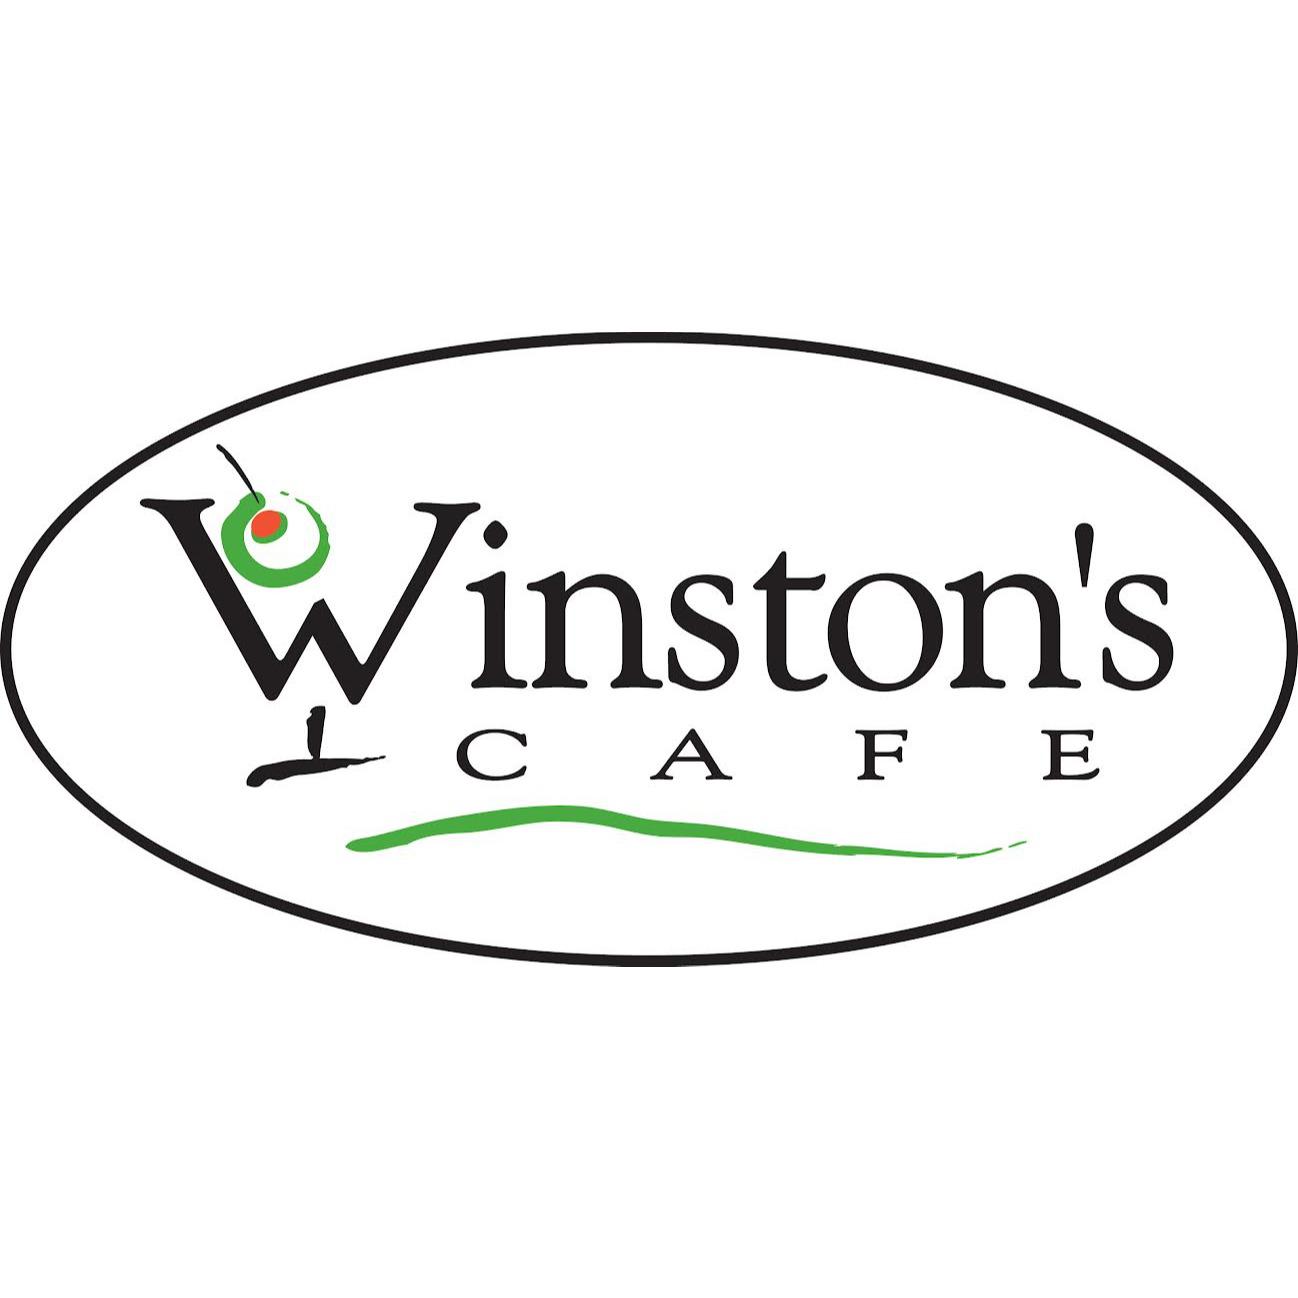 Winston's Cafe - Chesapeake, VA 23320 - (757)420-1751 | ShowMeLocal.com